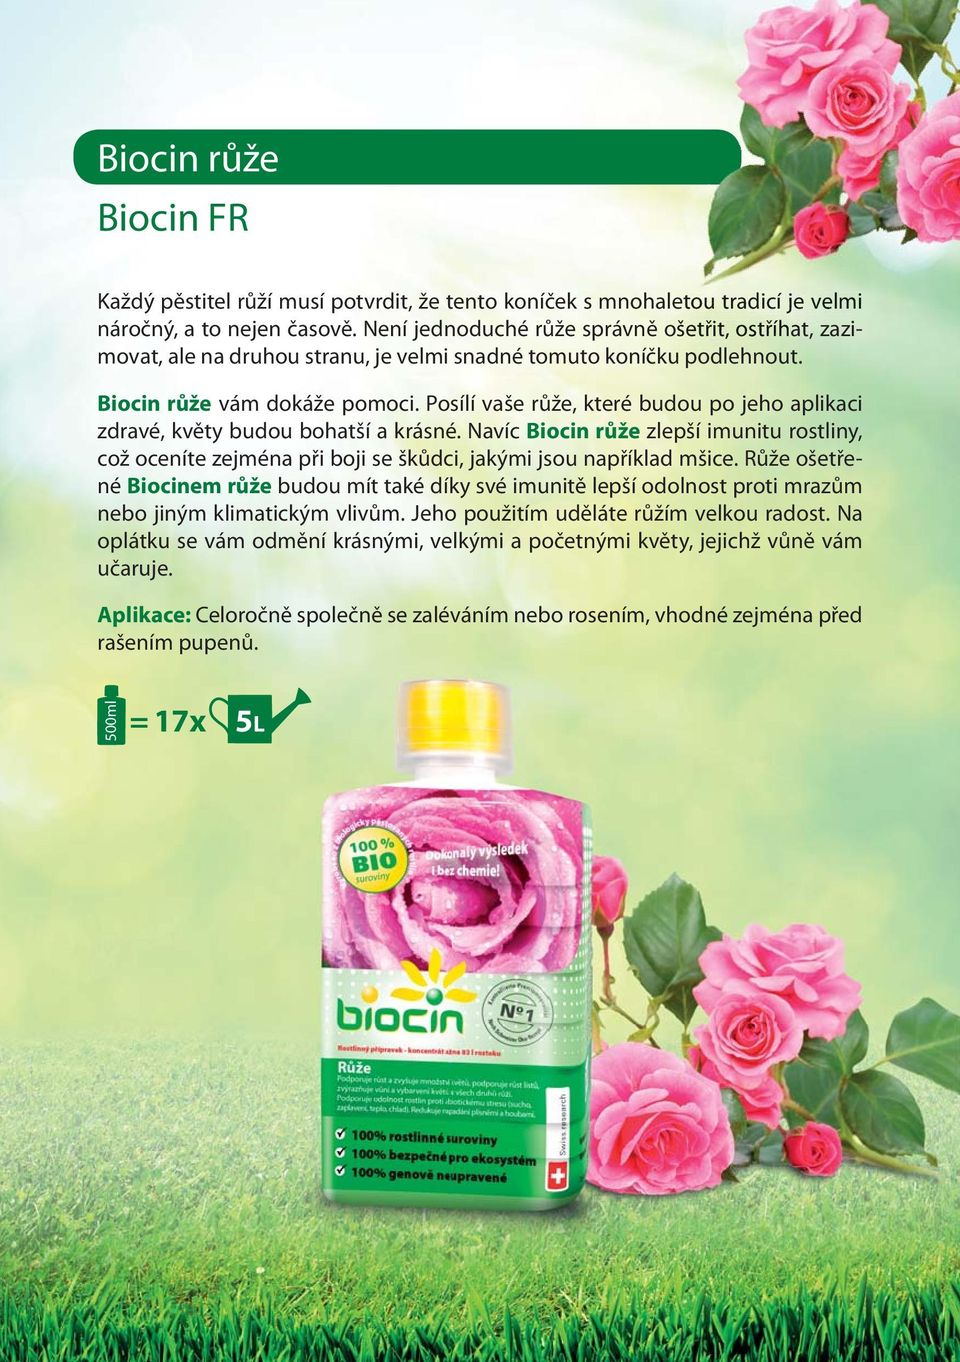 Posílí vaše růže, které budou po jeho aplikaci zdravé, květy budou bohatší a krásné. Navíc Biocin růže zlepší imunitu rostliny, což oceníte zejména při boji se škůdci, jakými jsou například mšice.